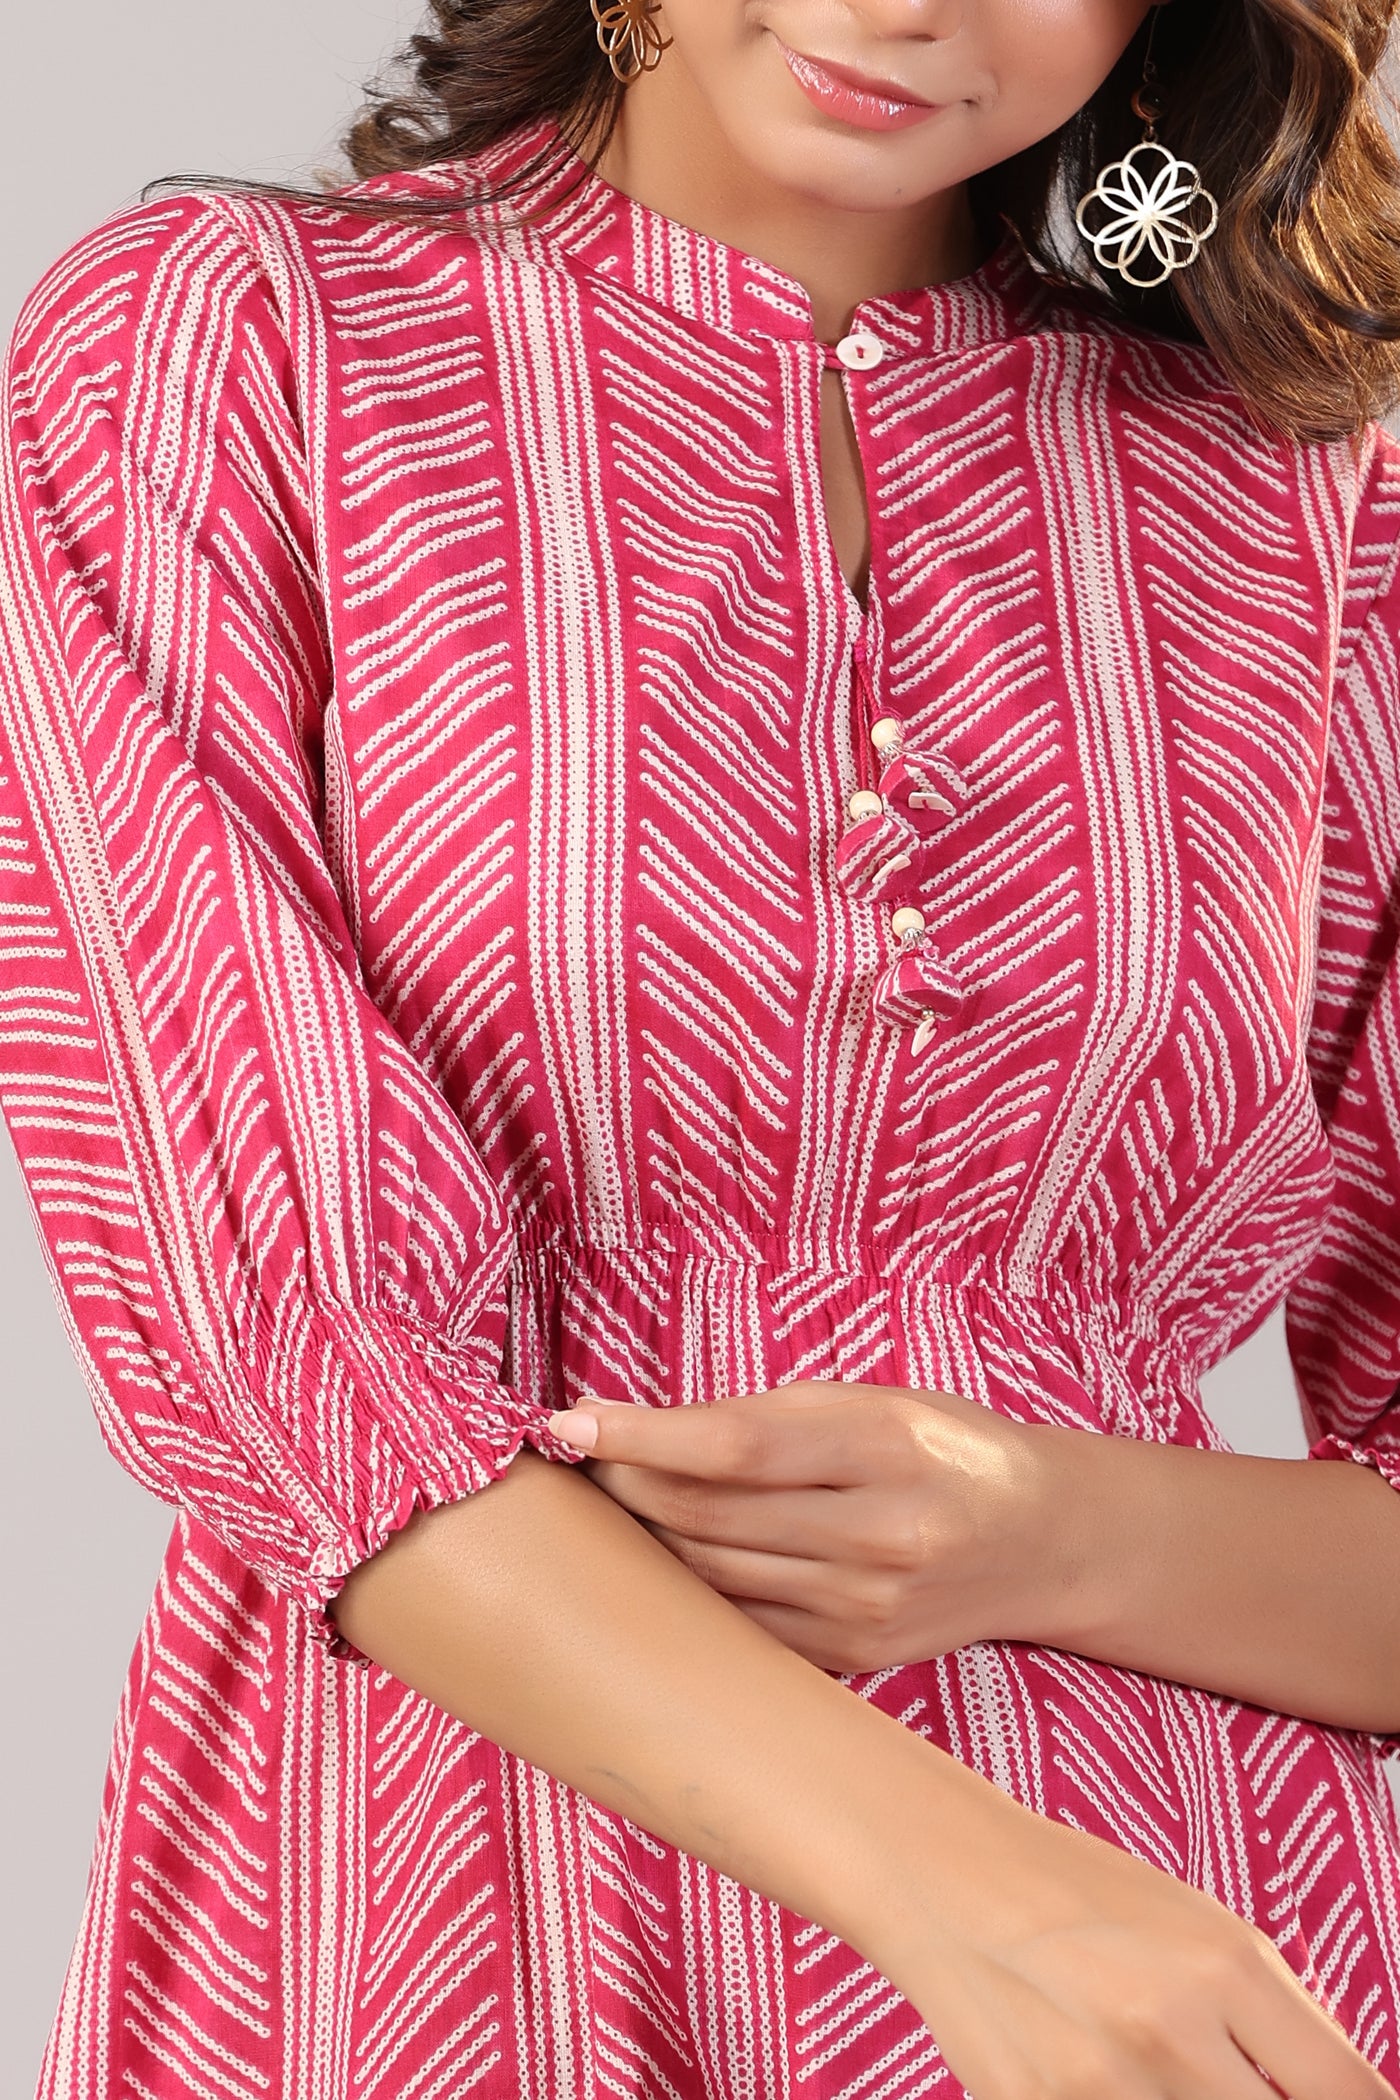 Patterned Shibori on Hot Pink MIDI Cotton Dress